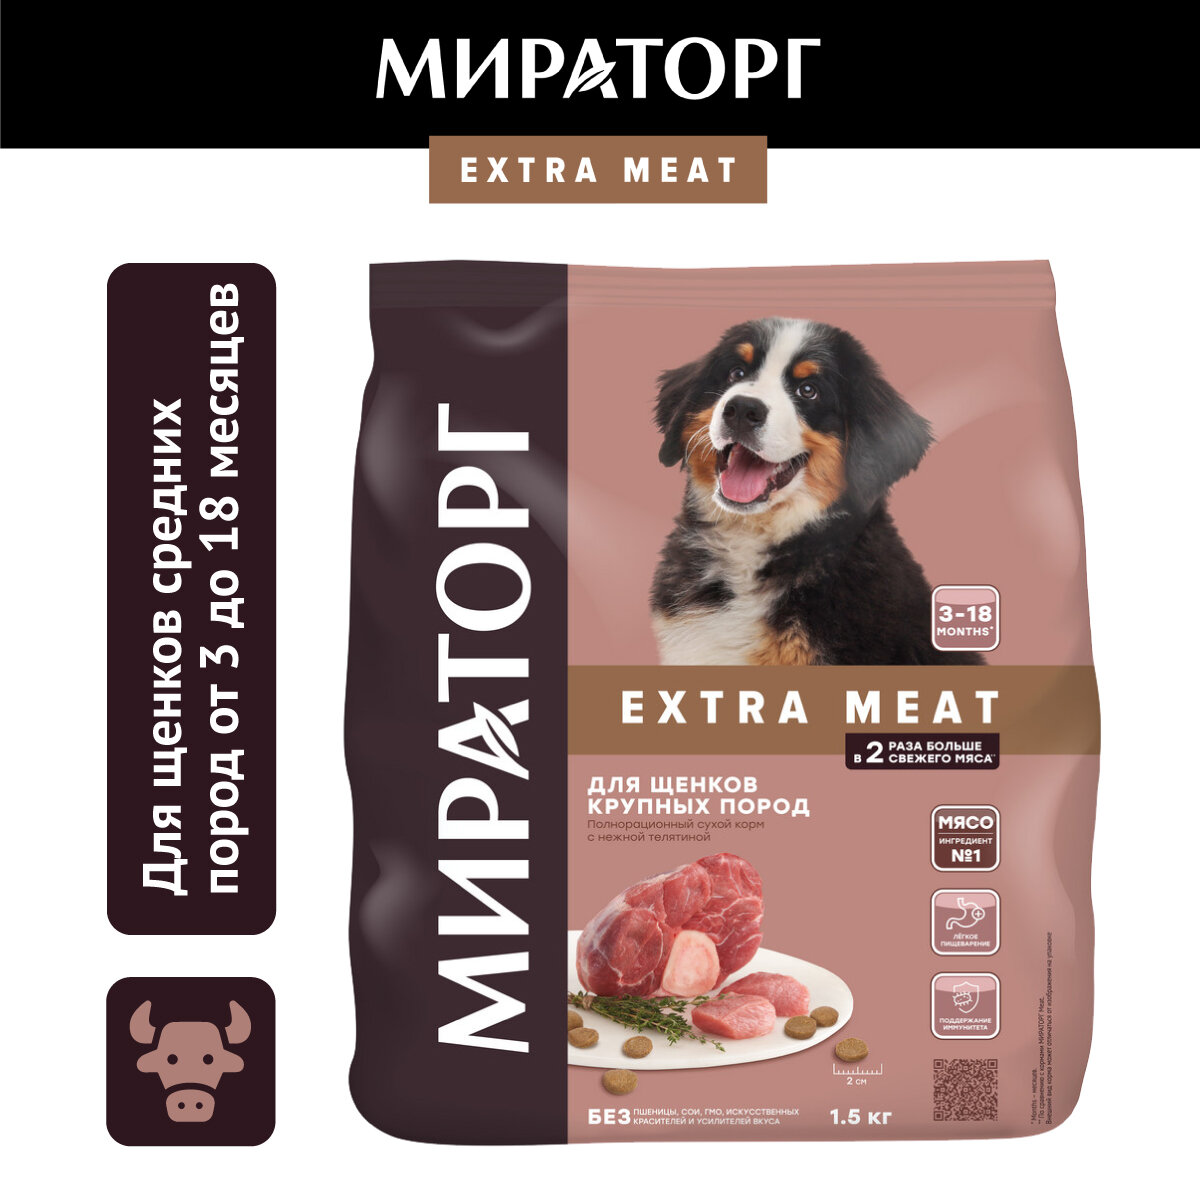 Корм сухой EXTRA MEAT для щенков крупных пород в возрасте от 3 до 18 месяцев, c нежной телятиной, 1,5кг — купить в интернет-магазине по низкой цене на Яндекс Маркете